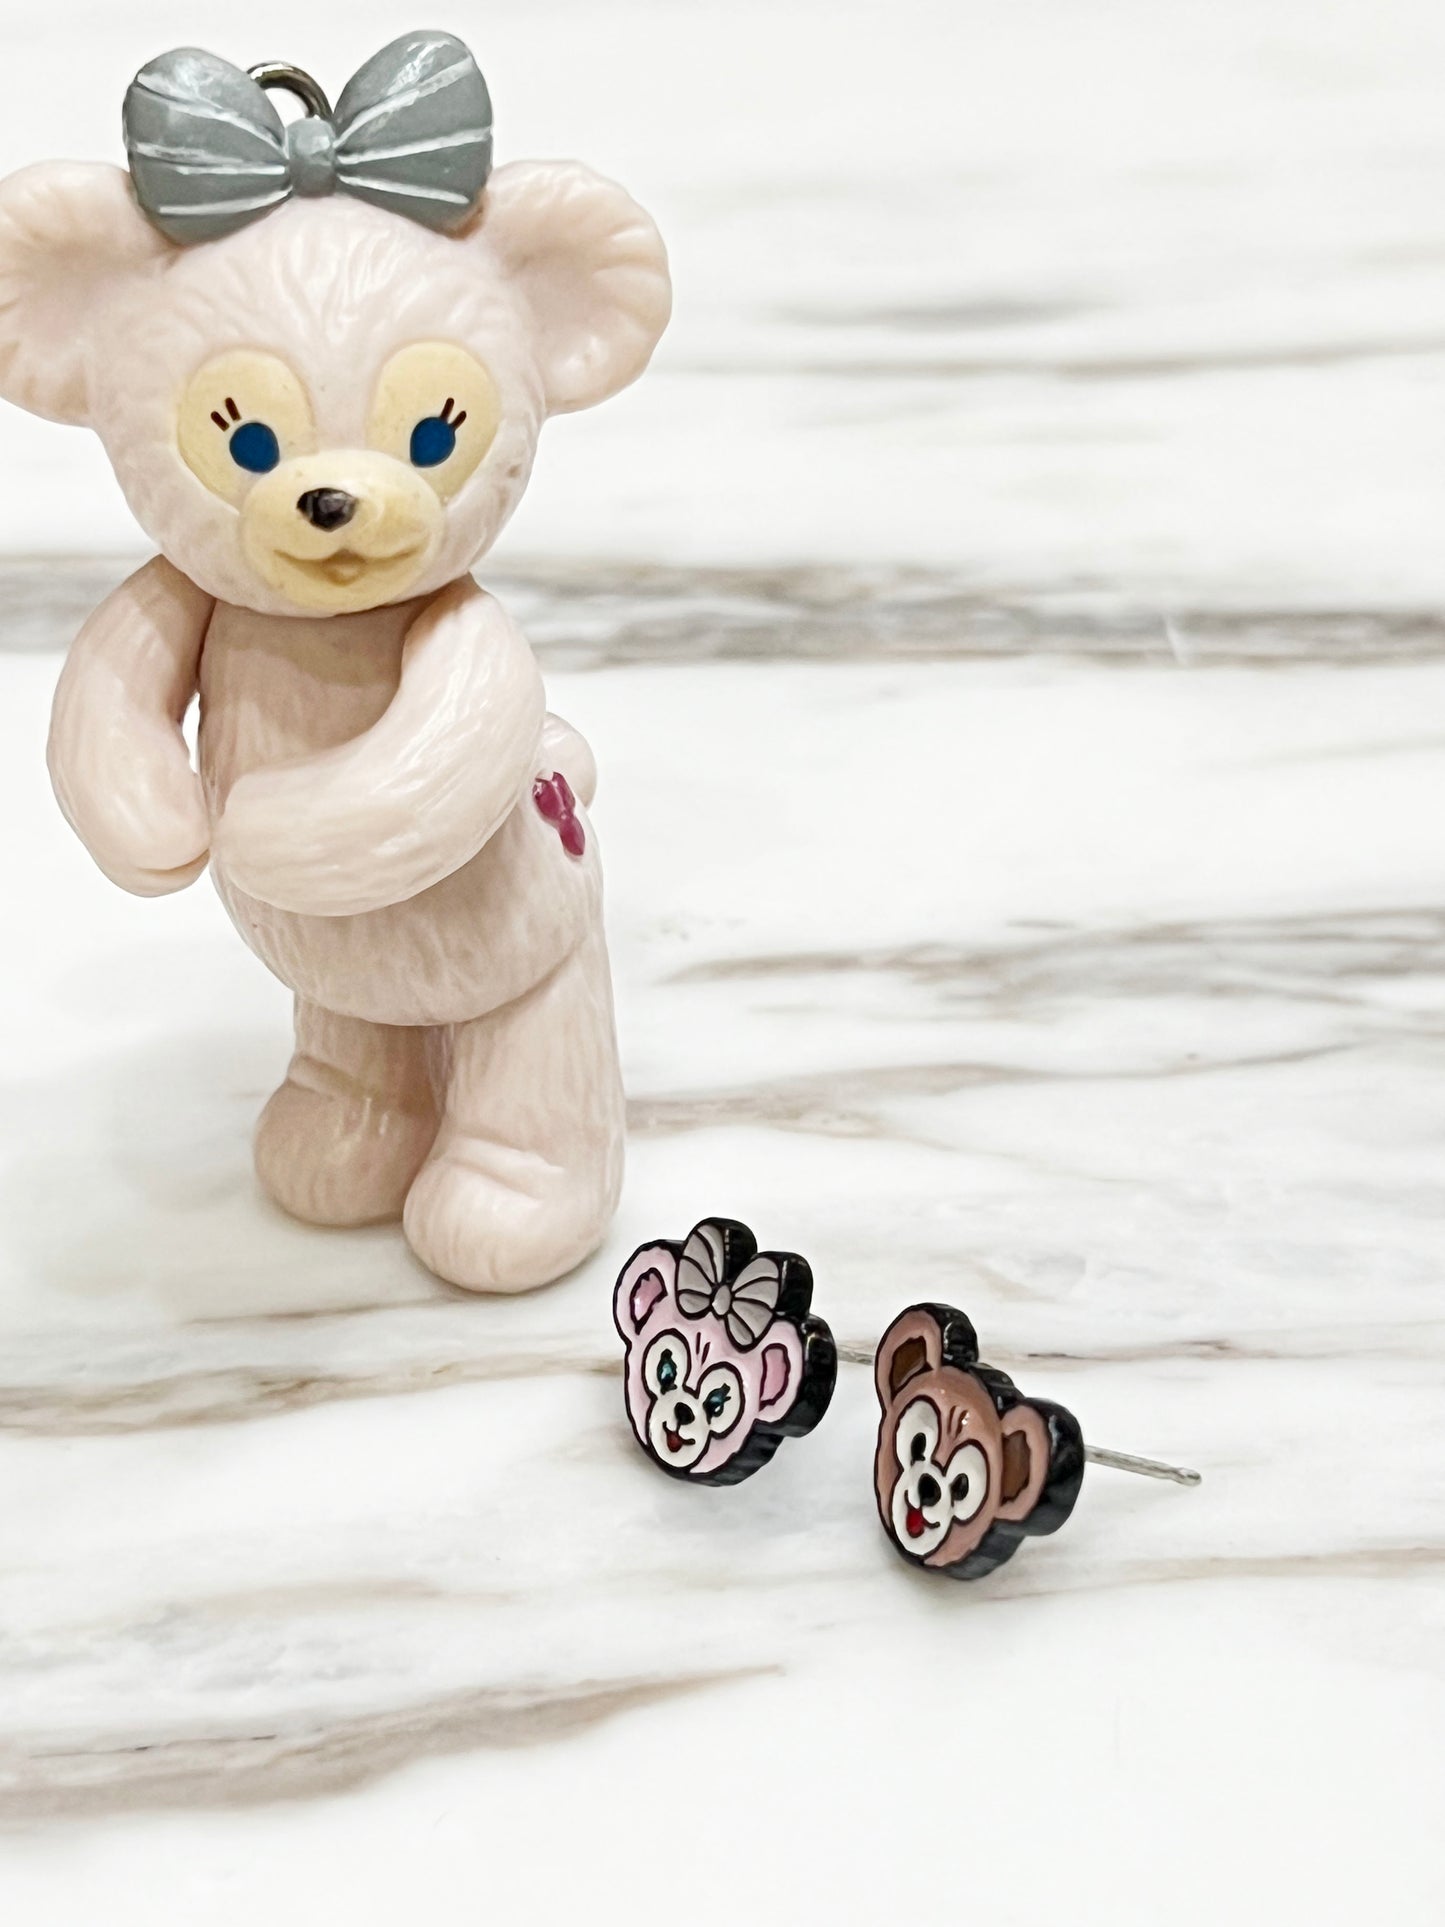 Disney-licensed Duffy the Disney Bear stud earrings, cute earrings